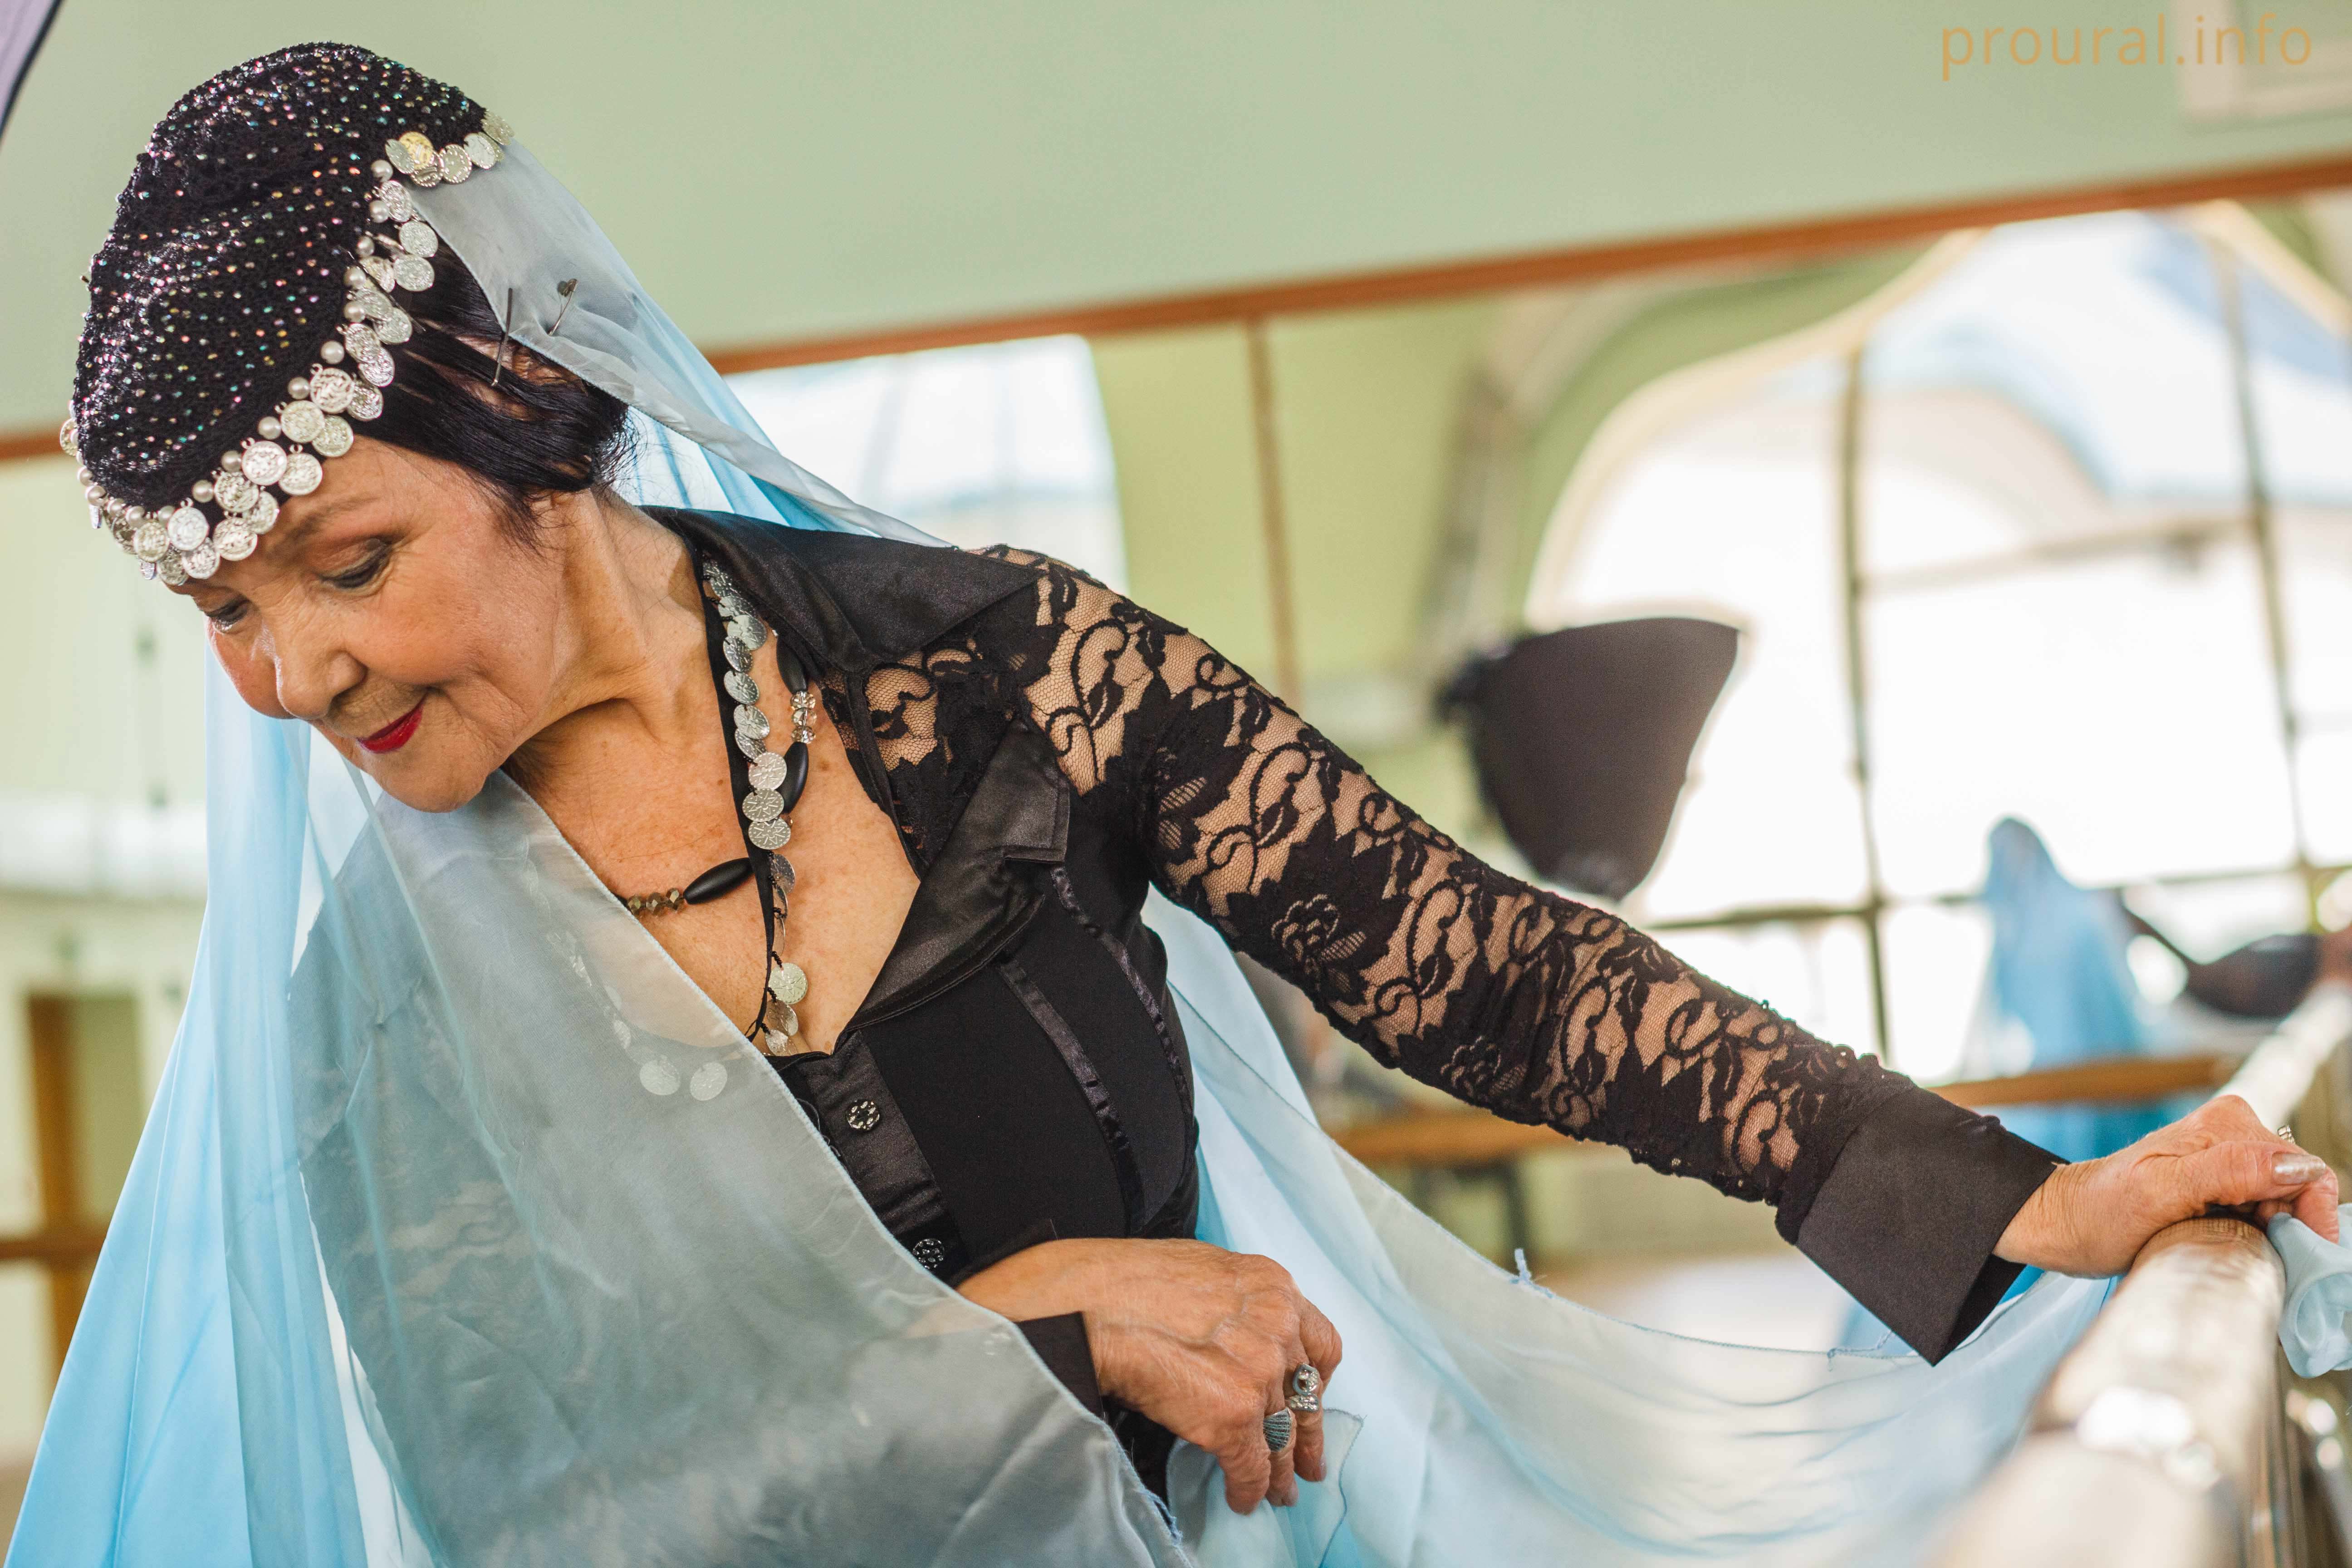 По-прежнему хороша и грациозна: фоторепортаж с юбилейной репетиции самой взрослой исполнительницы народных танцев